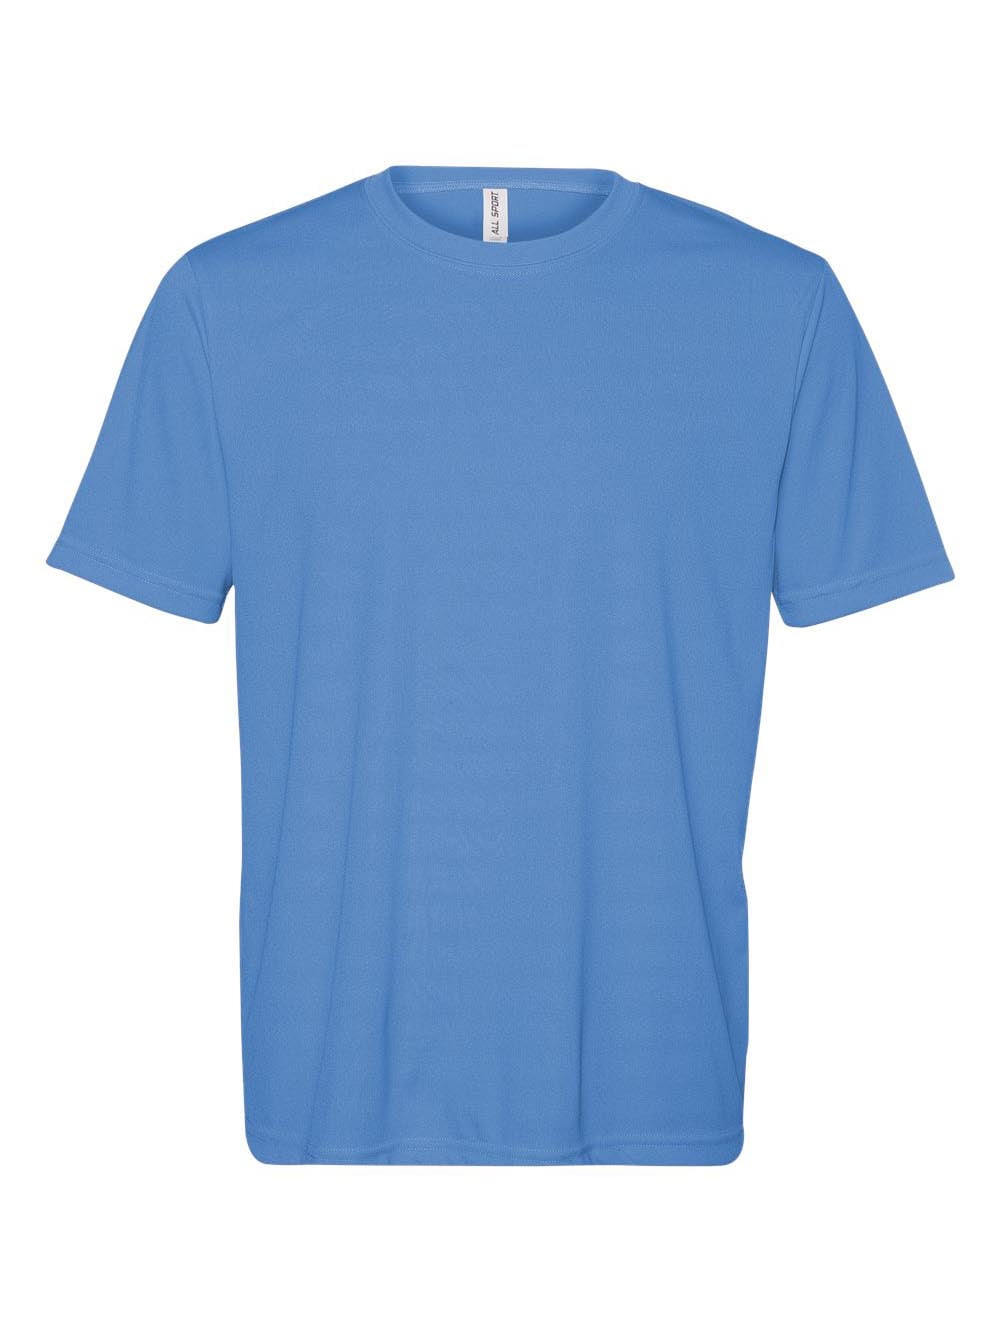 All Sport - Polyester Sport T-Shirt - M1009 - Walmart.com